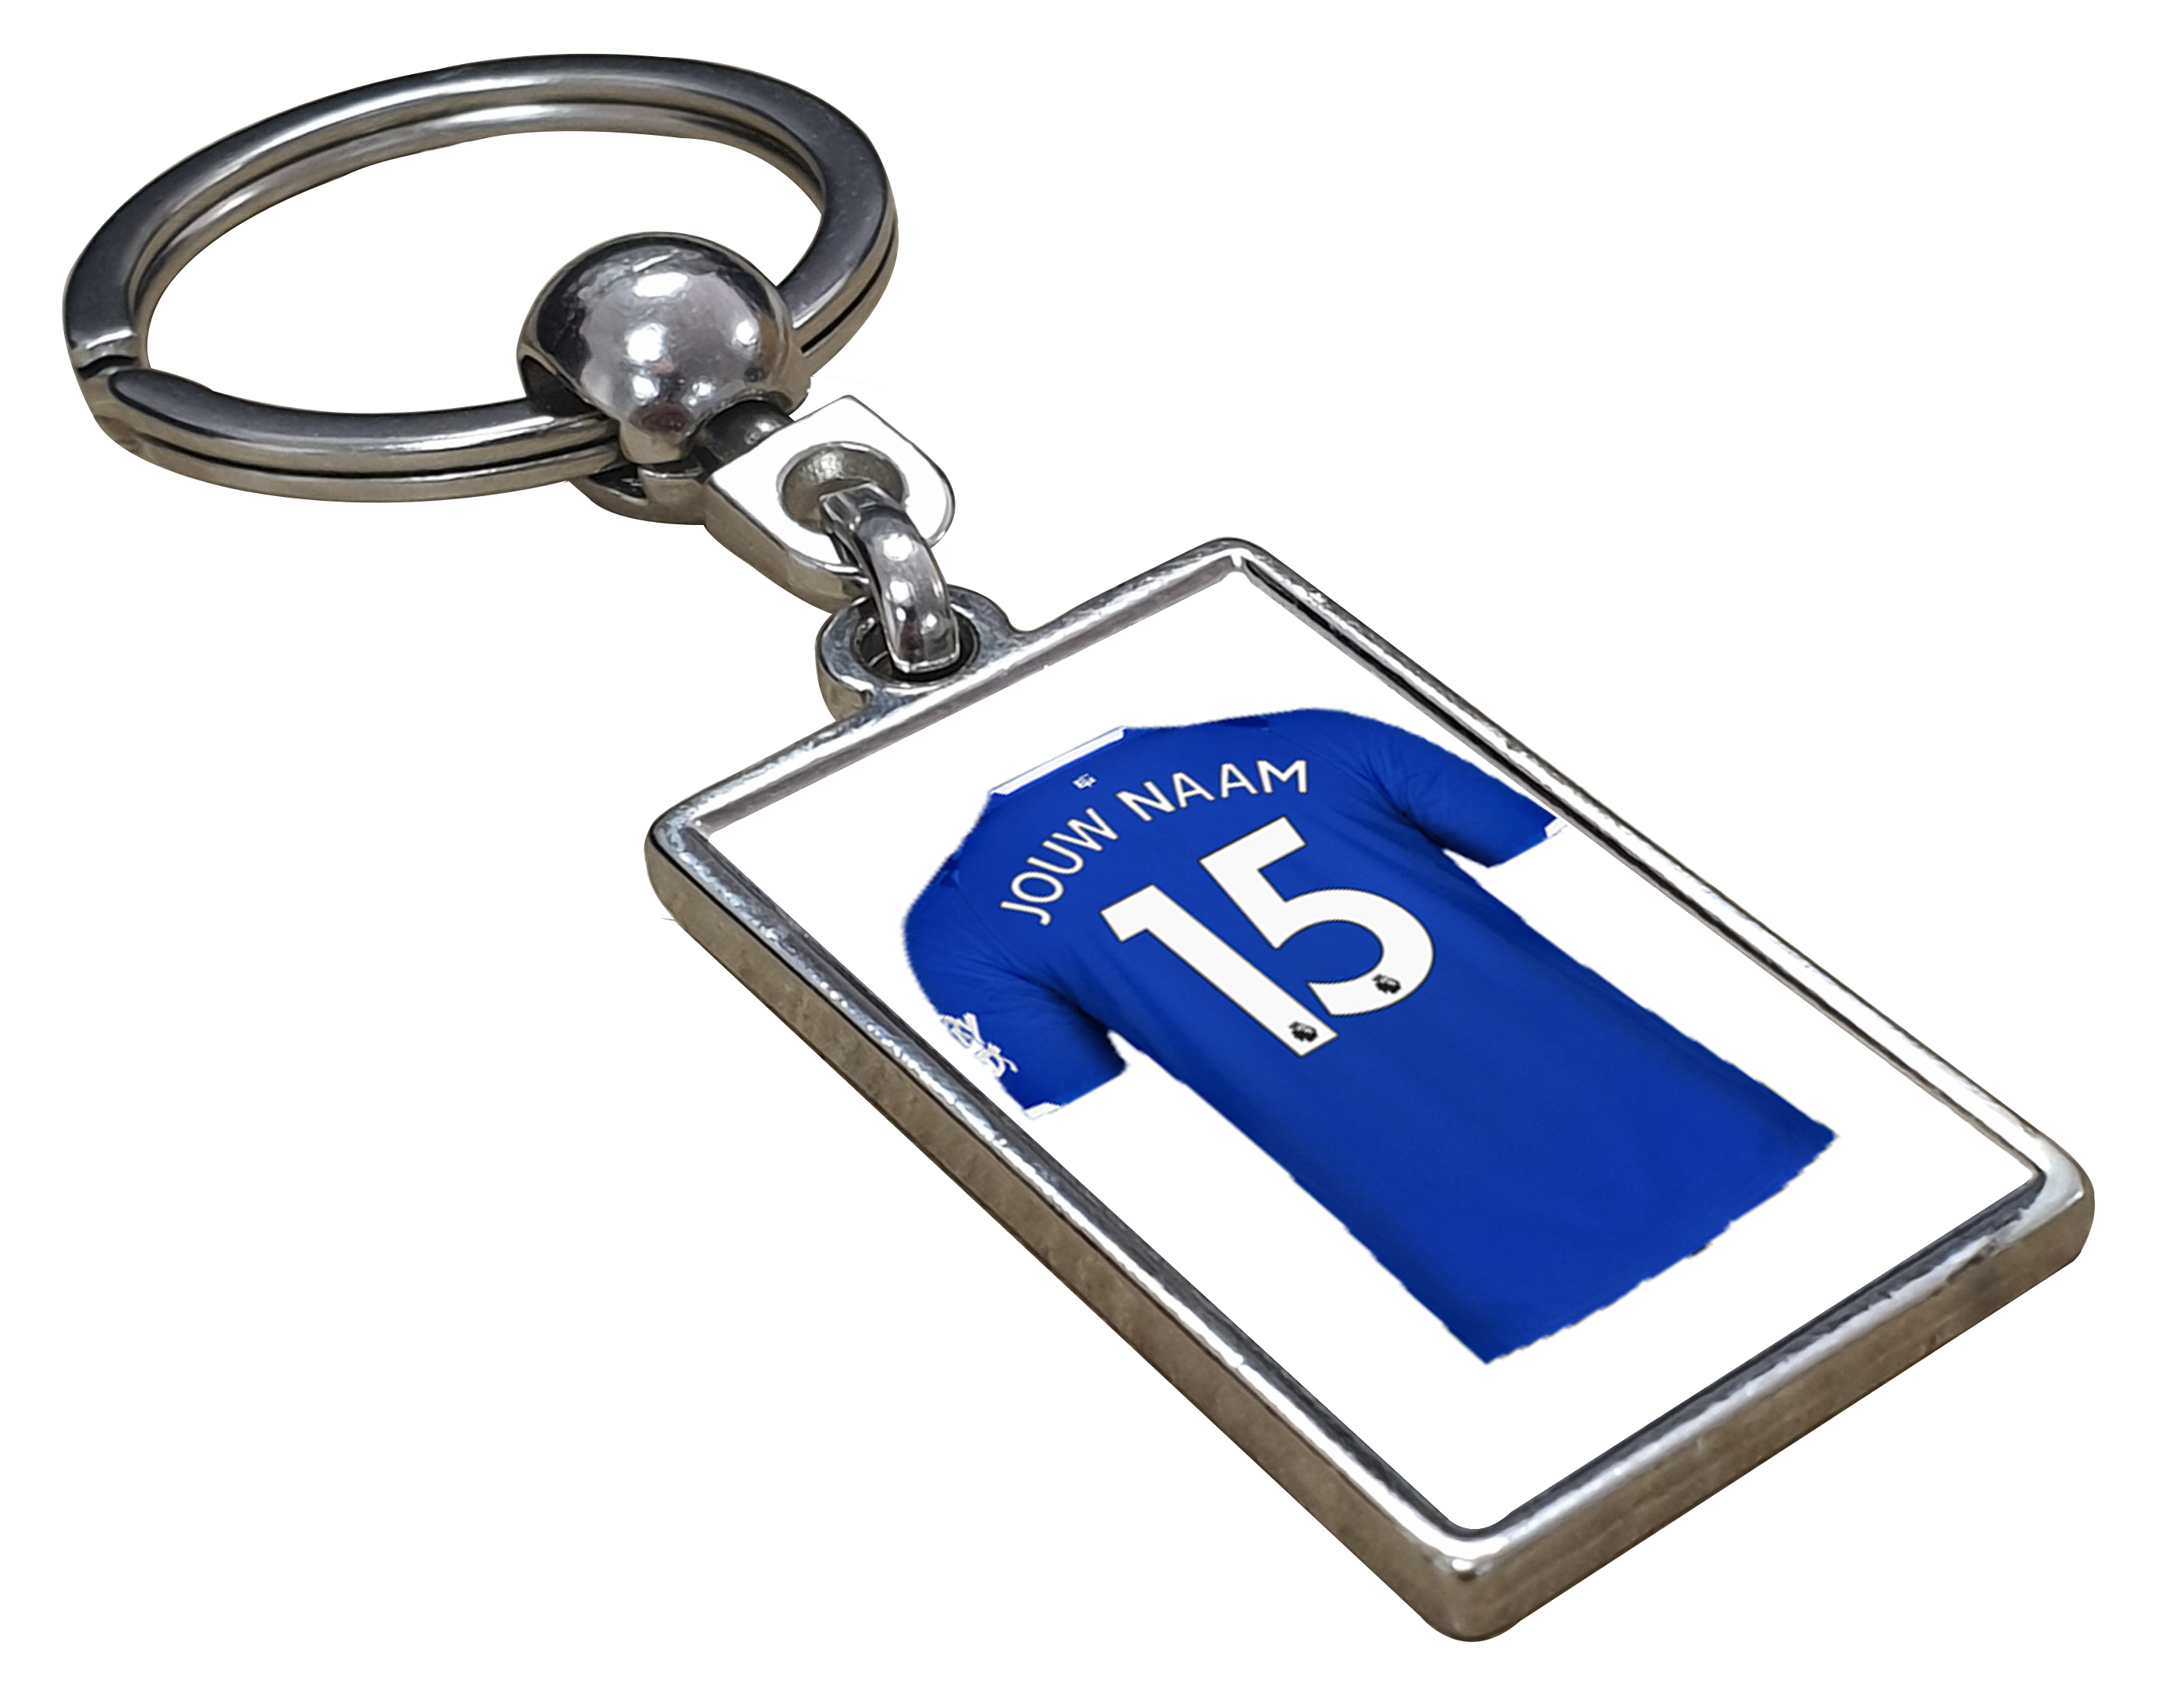 Everton Shirt met Jouw Naam - Gepersonaliseerde Sleutelhanger met Jouw Naam en Nummer